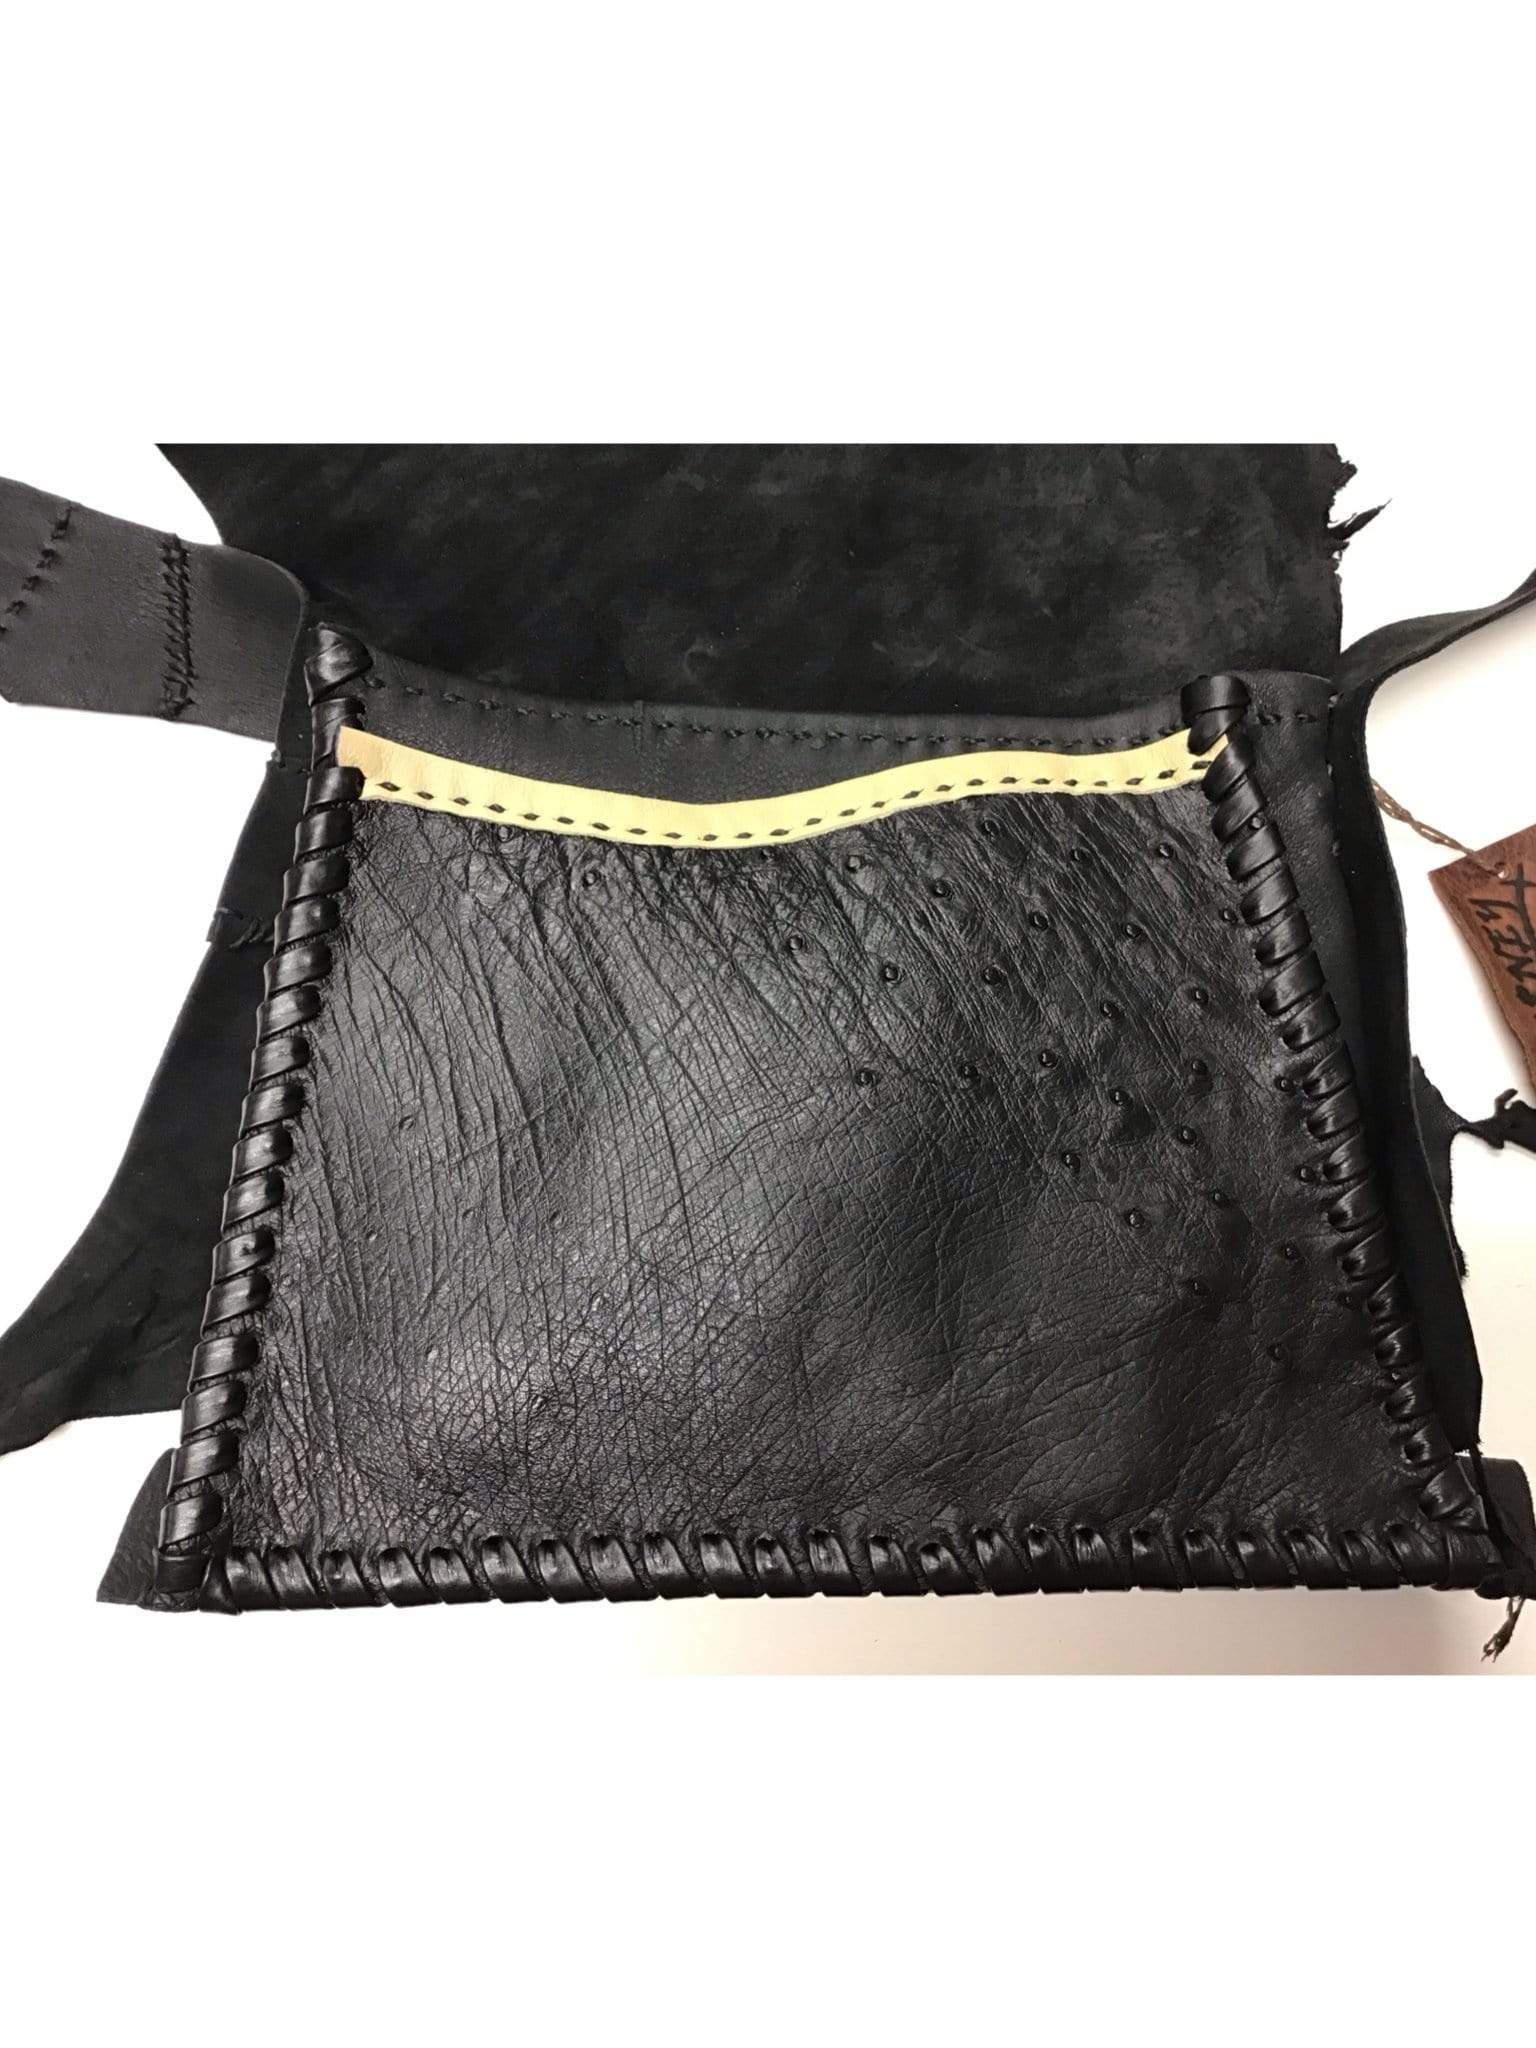 Journey bags Handbag Black Deerskin Bag